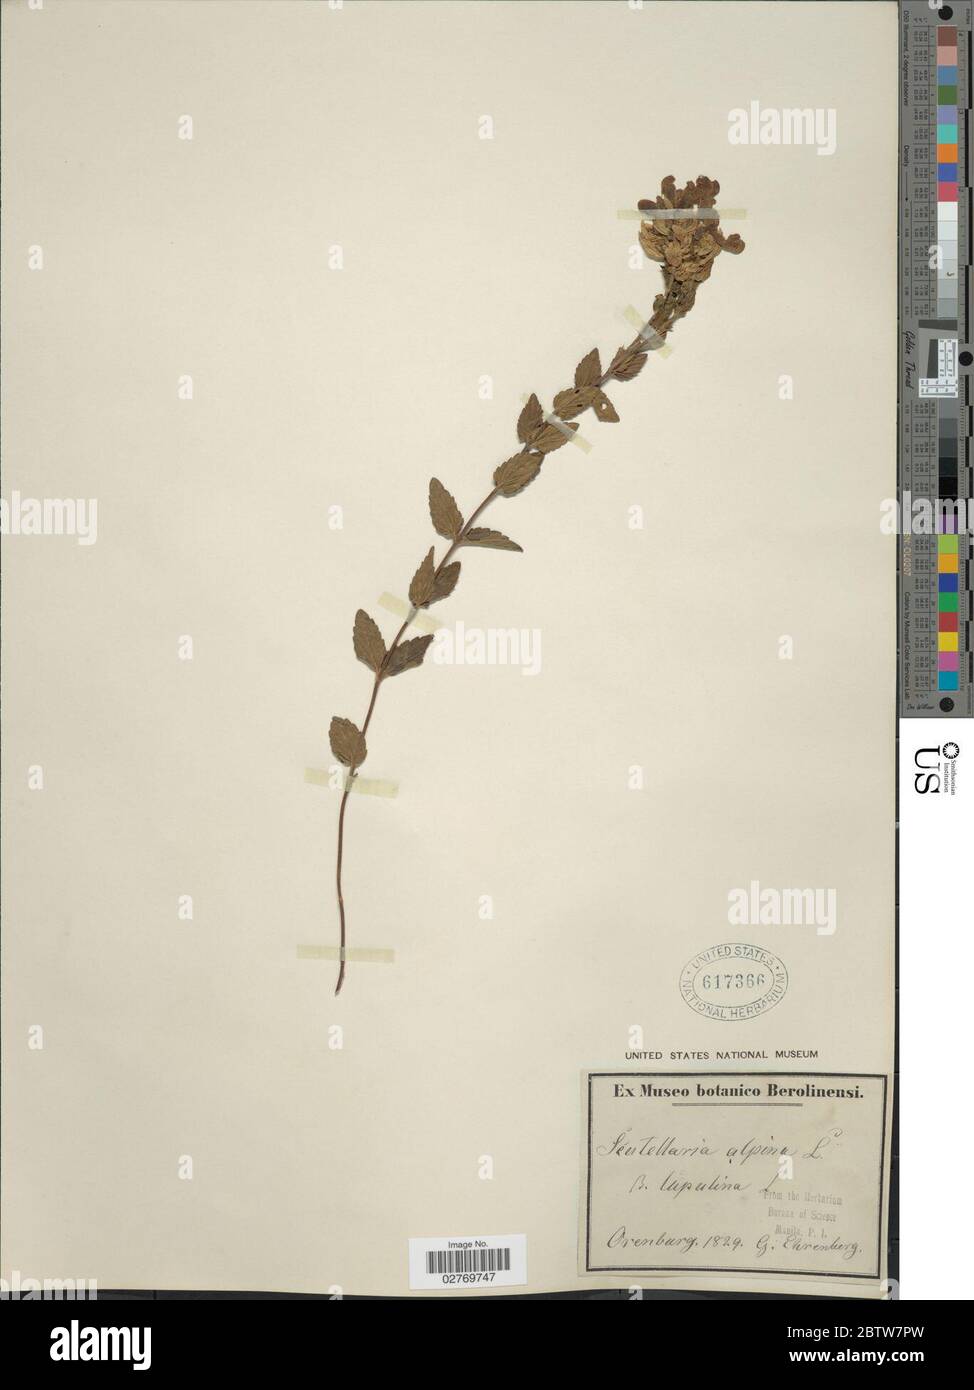 Scutellaria alpina L. Stock Photo